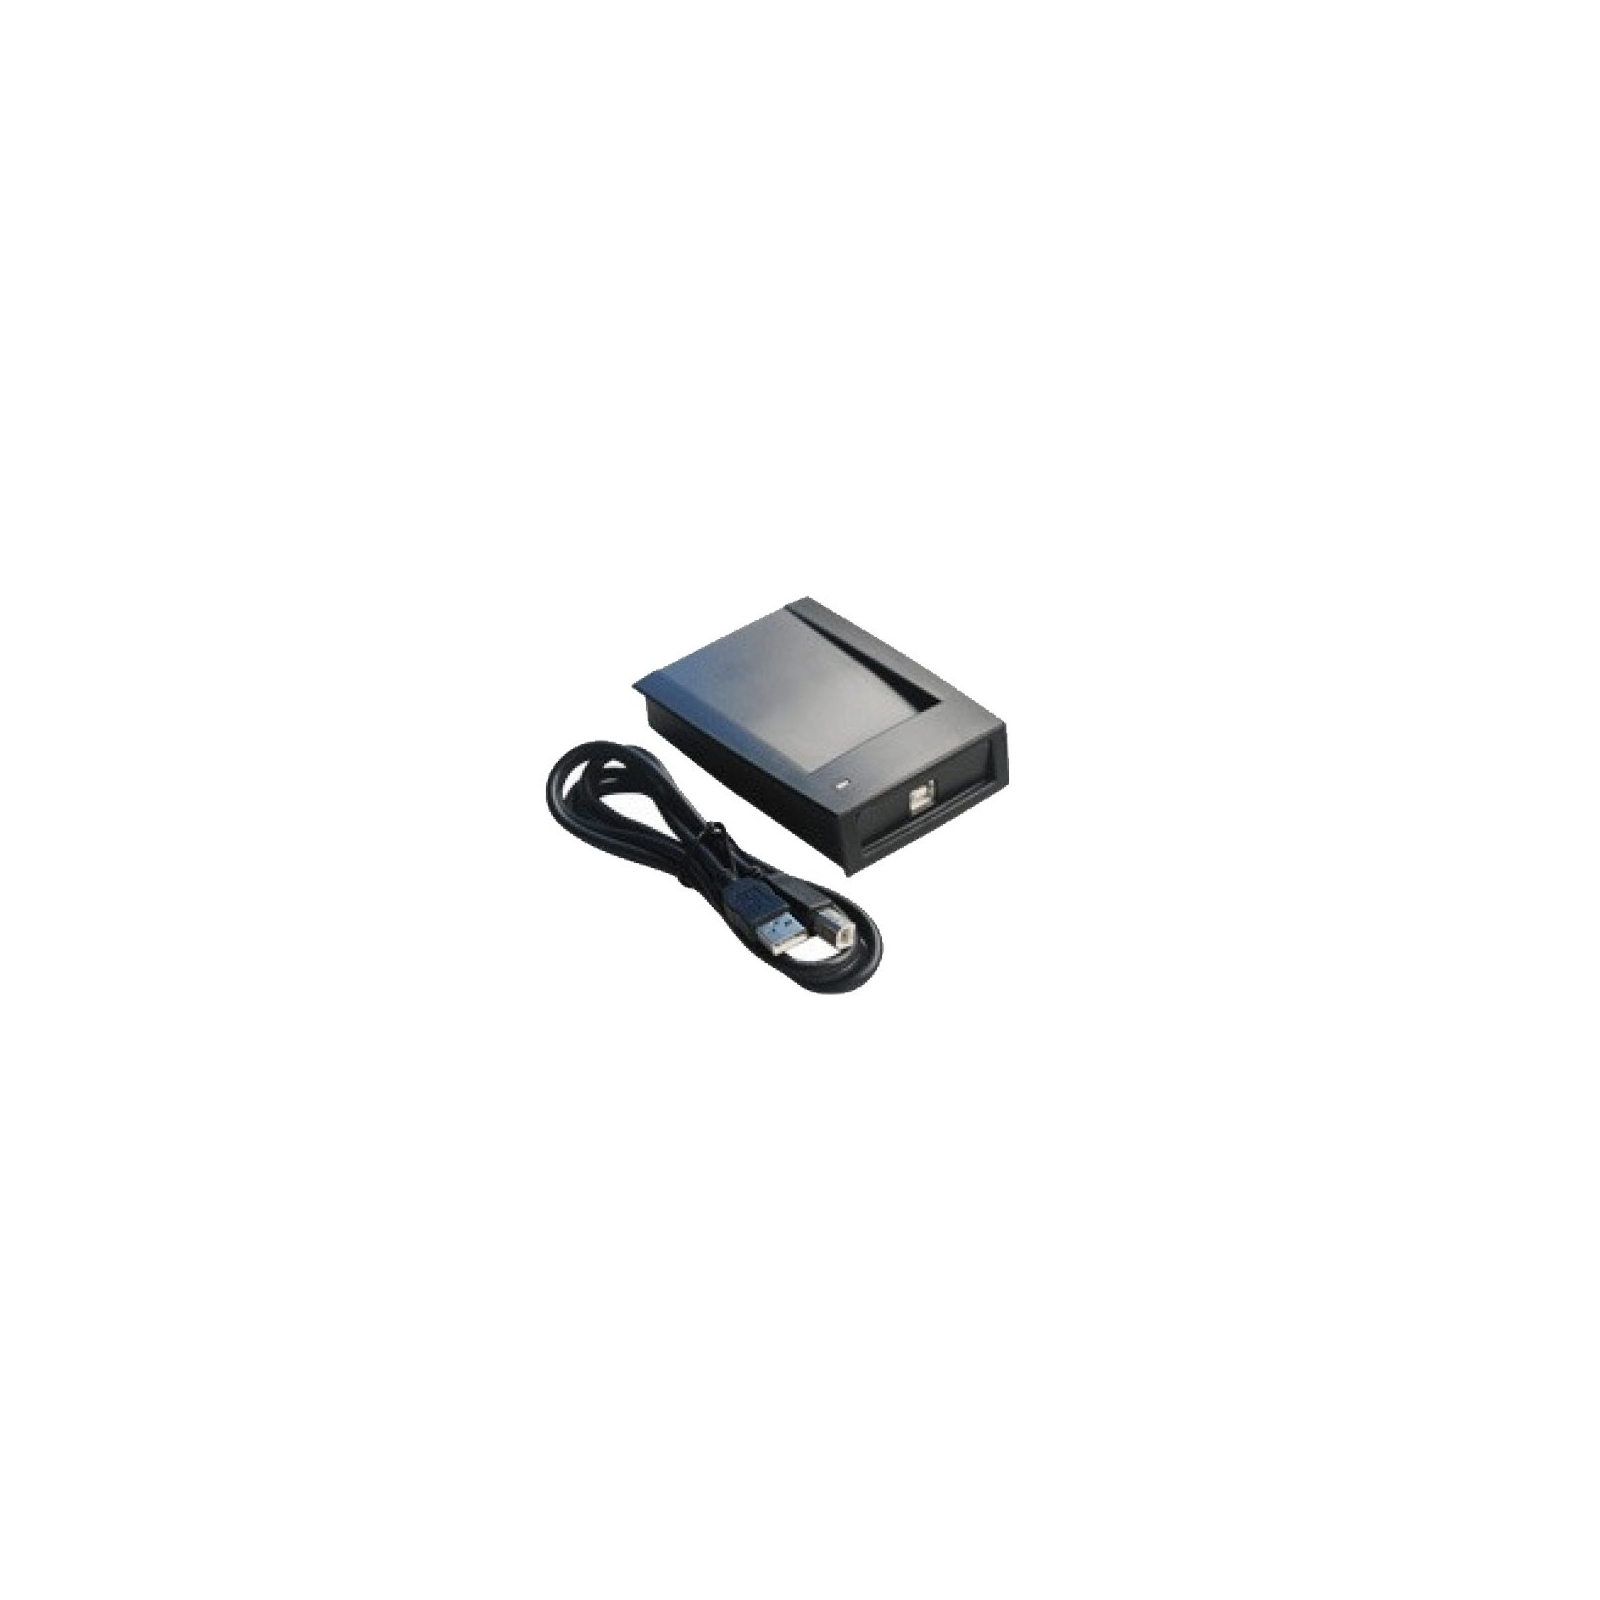 Зчитувач безконтактних карт Partizan PAR-E1 USB (79673) зображення 2